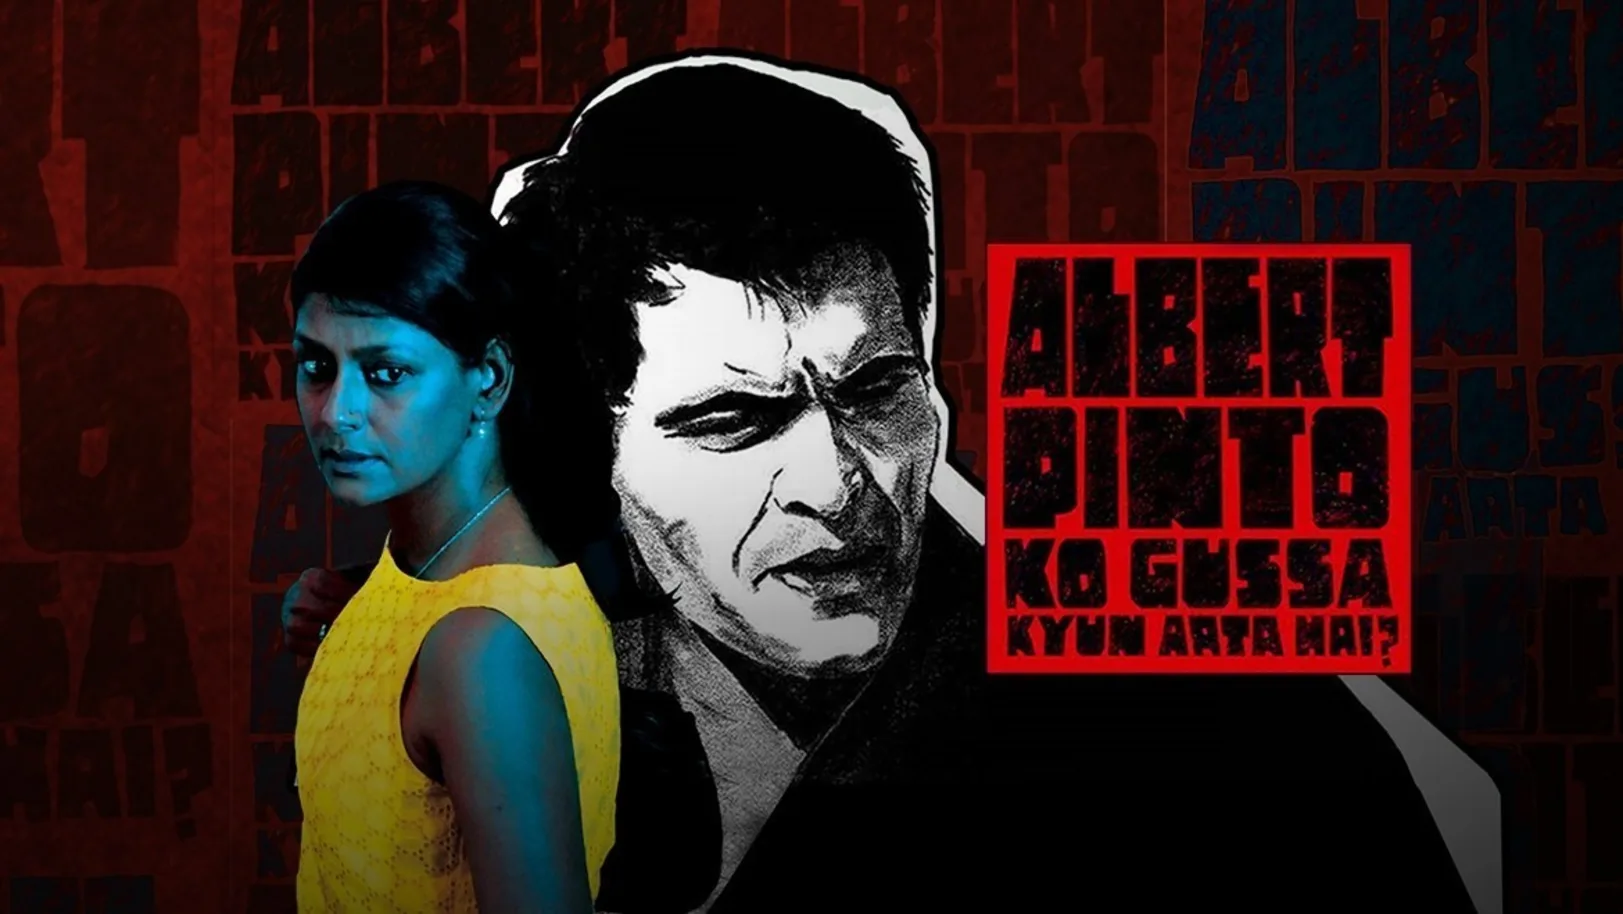 Albert Pinto Ko Gussa Kyun Aata Hai? Movie